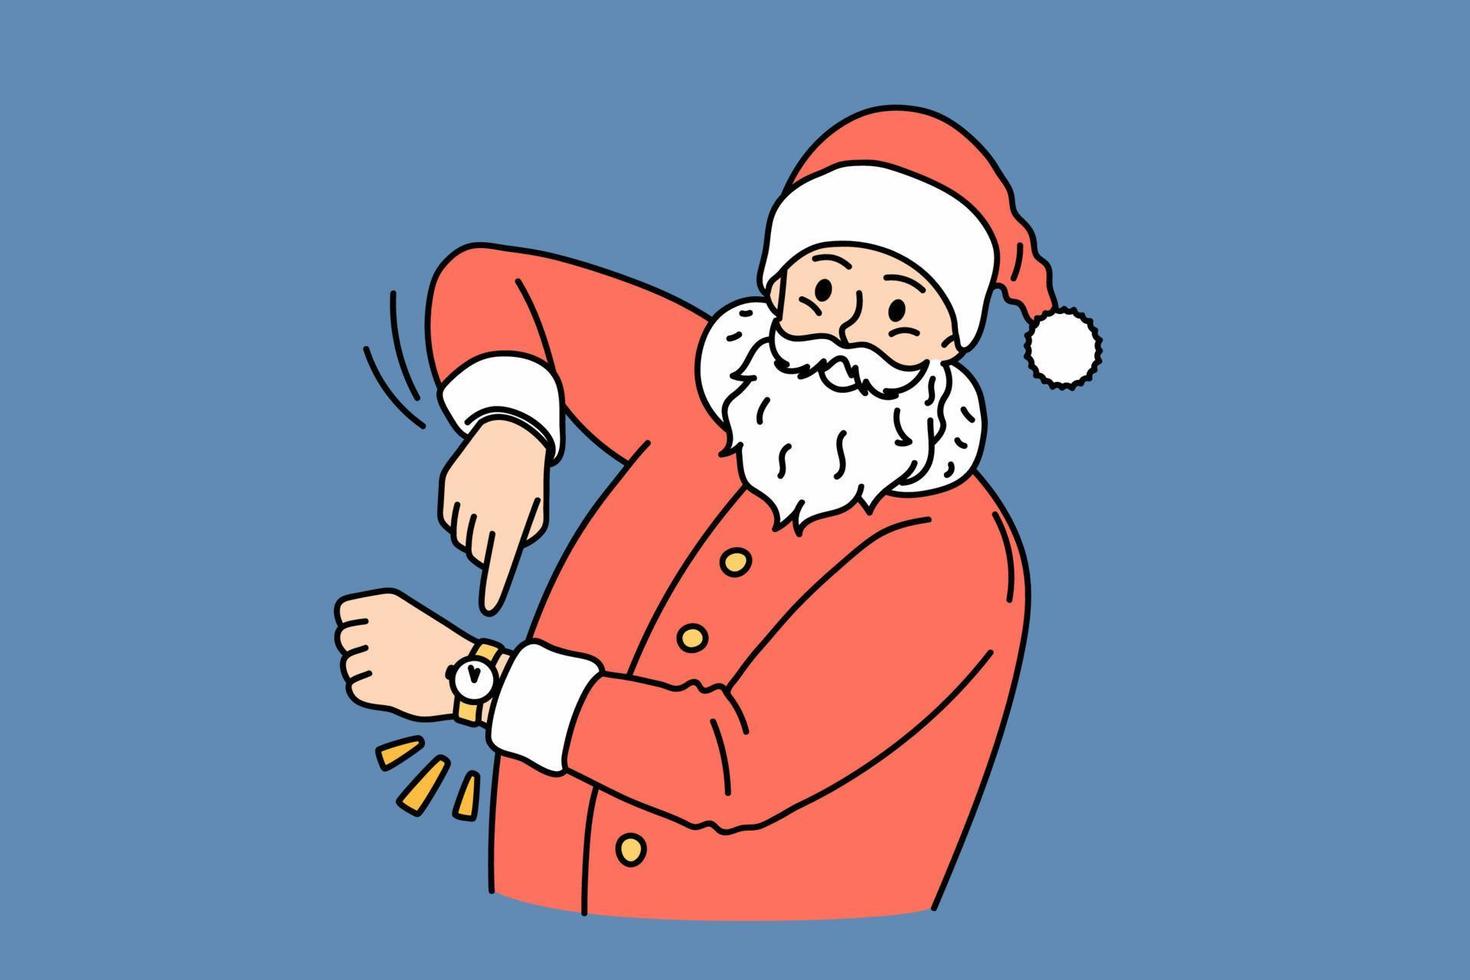 jul och ny år högtider begrepp. leende santa claus i traditionell röd kostym och keps stående och pekande i hand Kolla på menande ny år kommande vektor illustration